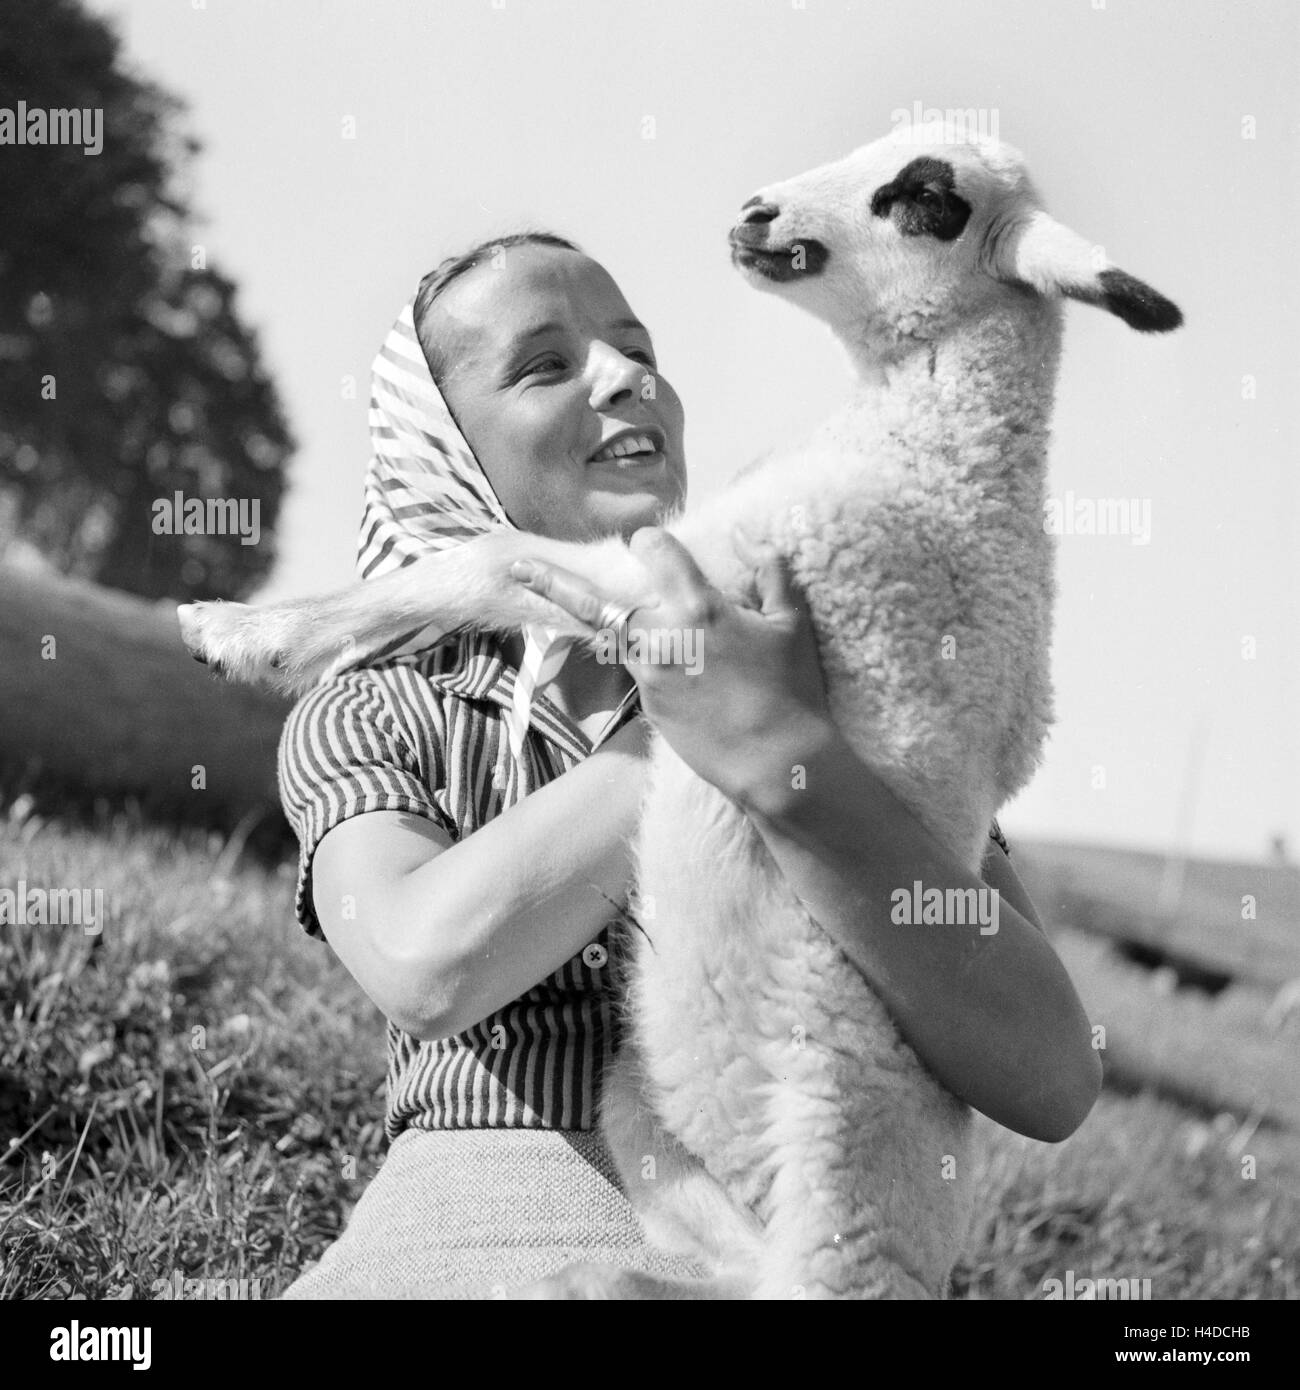 Junge Frau mit einem Lamm, Deutschland 1930er Jahre. Young woman holding a lamb, Germany 1930s. Stock Photo